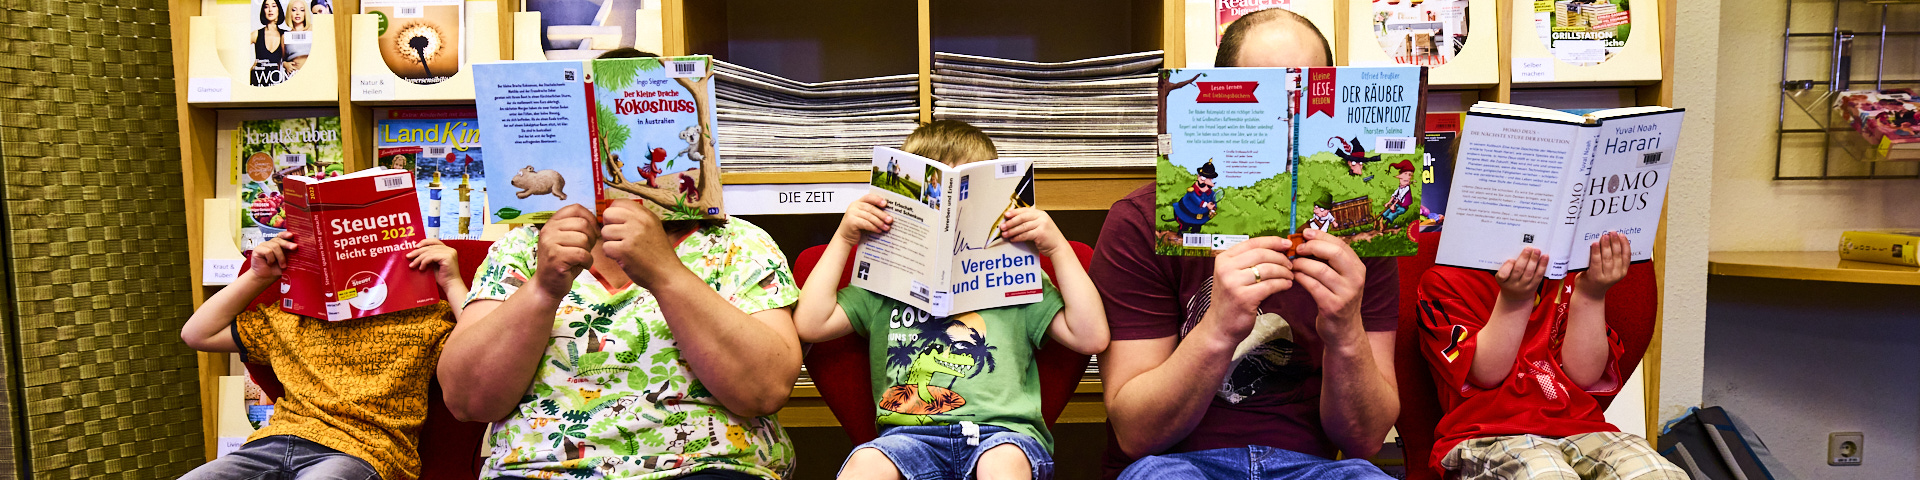 Drei Kinder und zwei Erwachsene sitzen in der Bücherei. Ihre Gesichter verdecken sie mit aufgeschlagenen Büchern. 